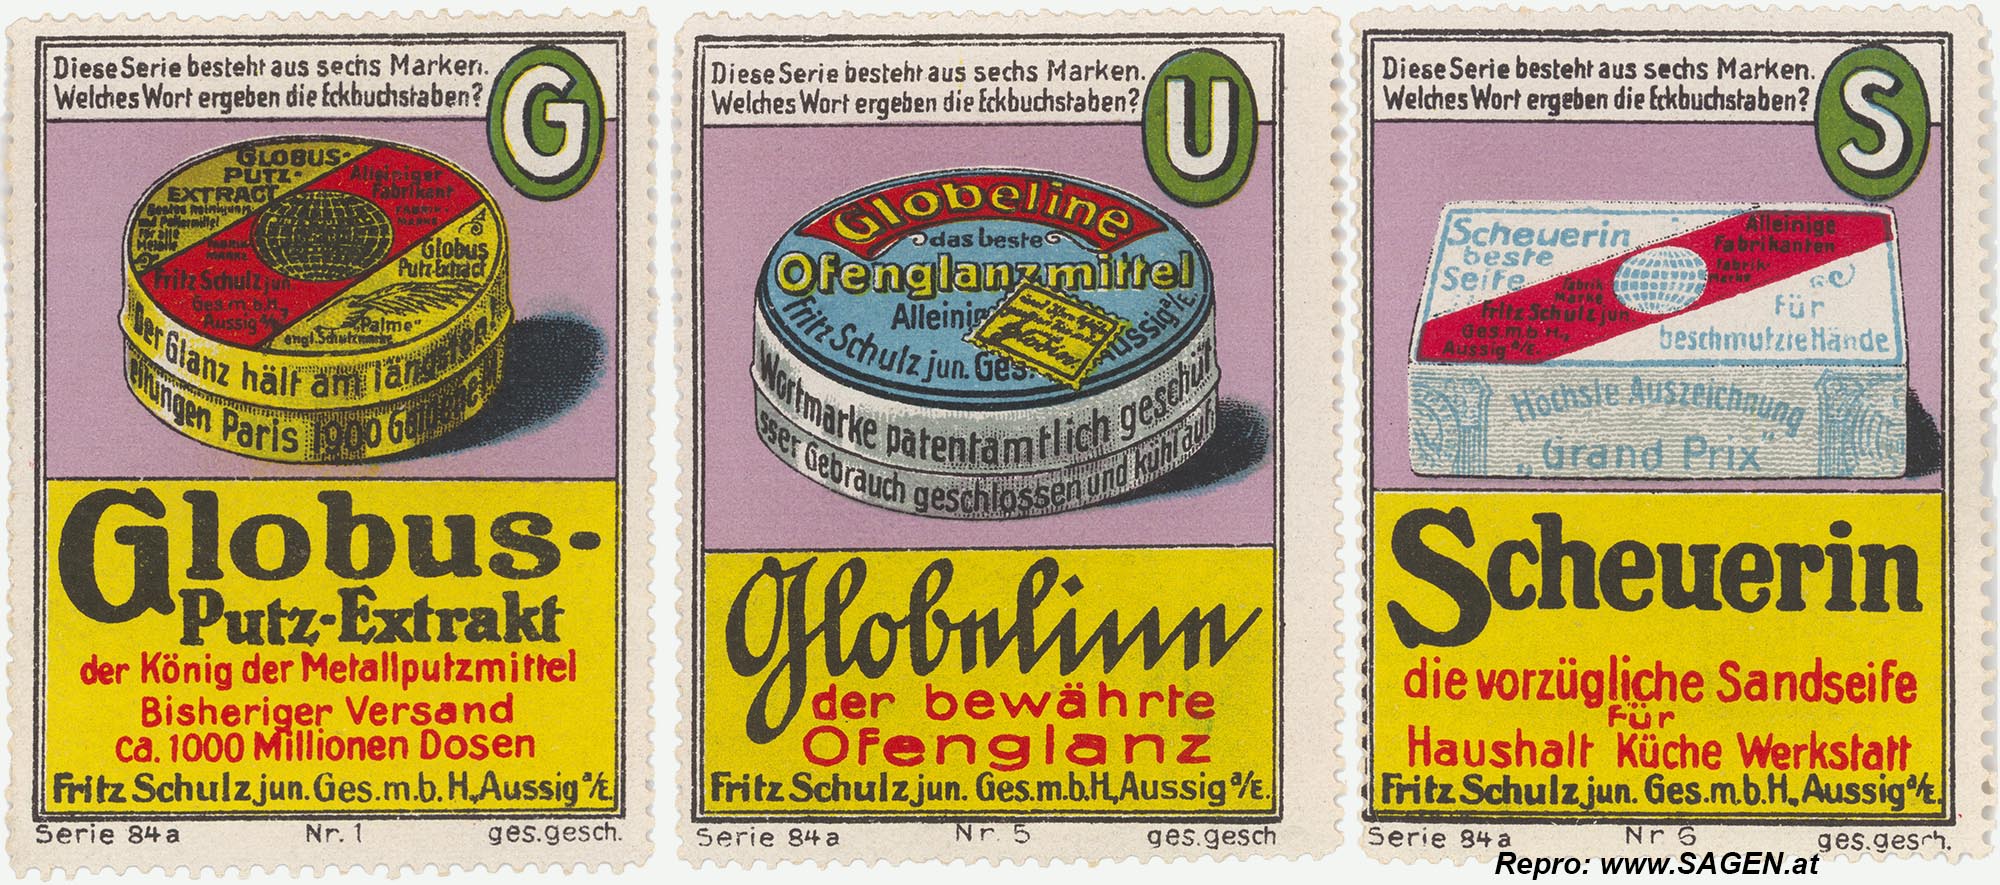 Reklamemarke Globus, Fritz Schulz jun. Aussig